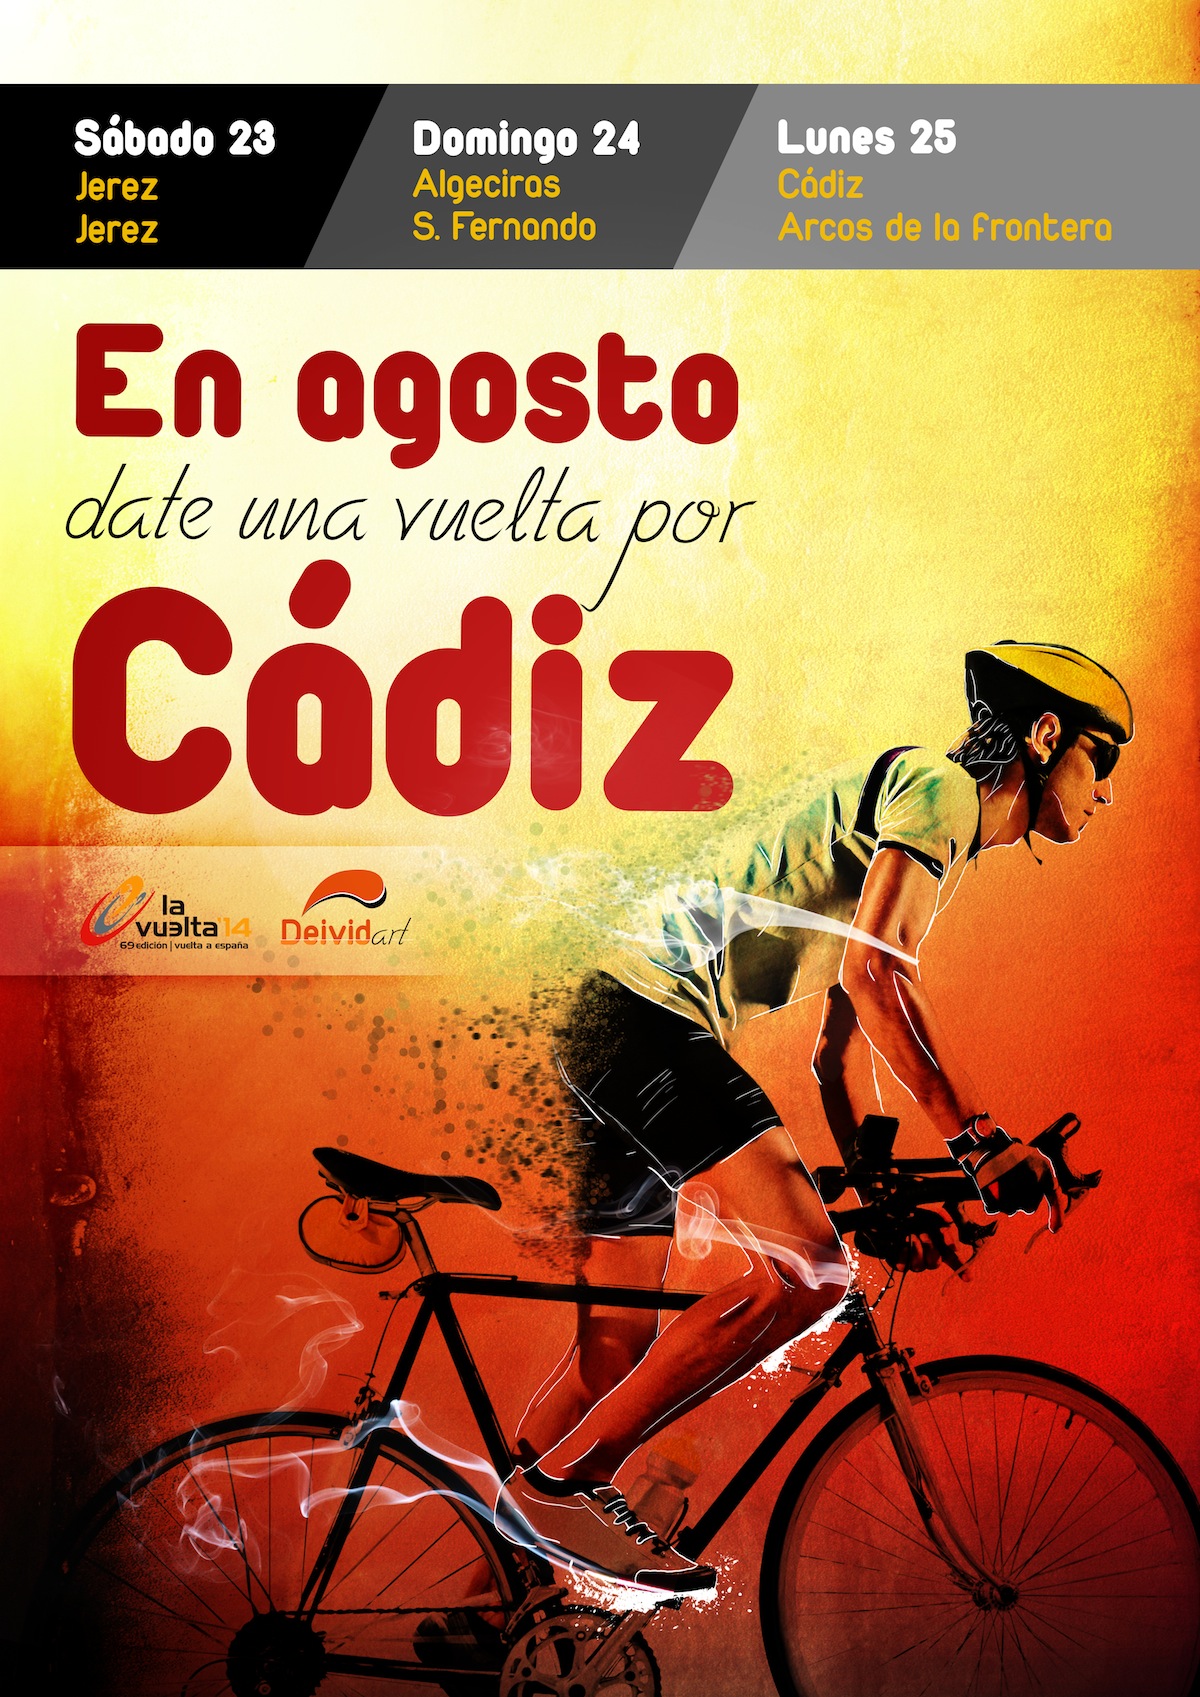 Cartel Vuelta ciclista España 2014